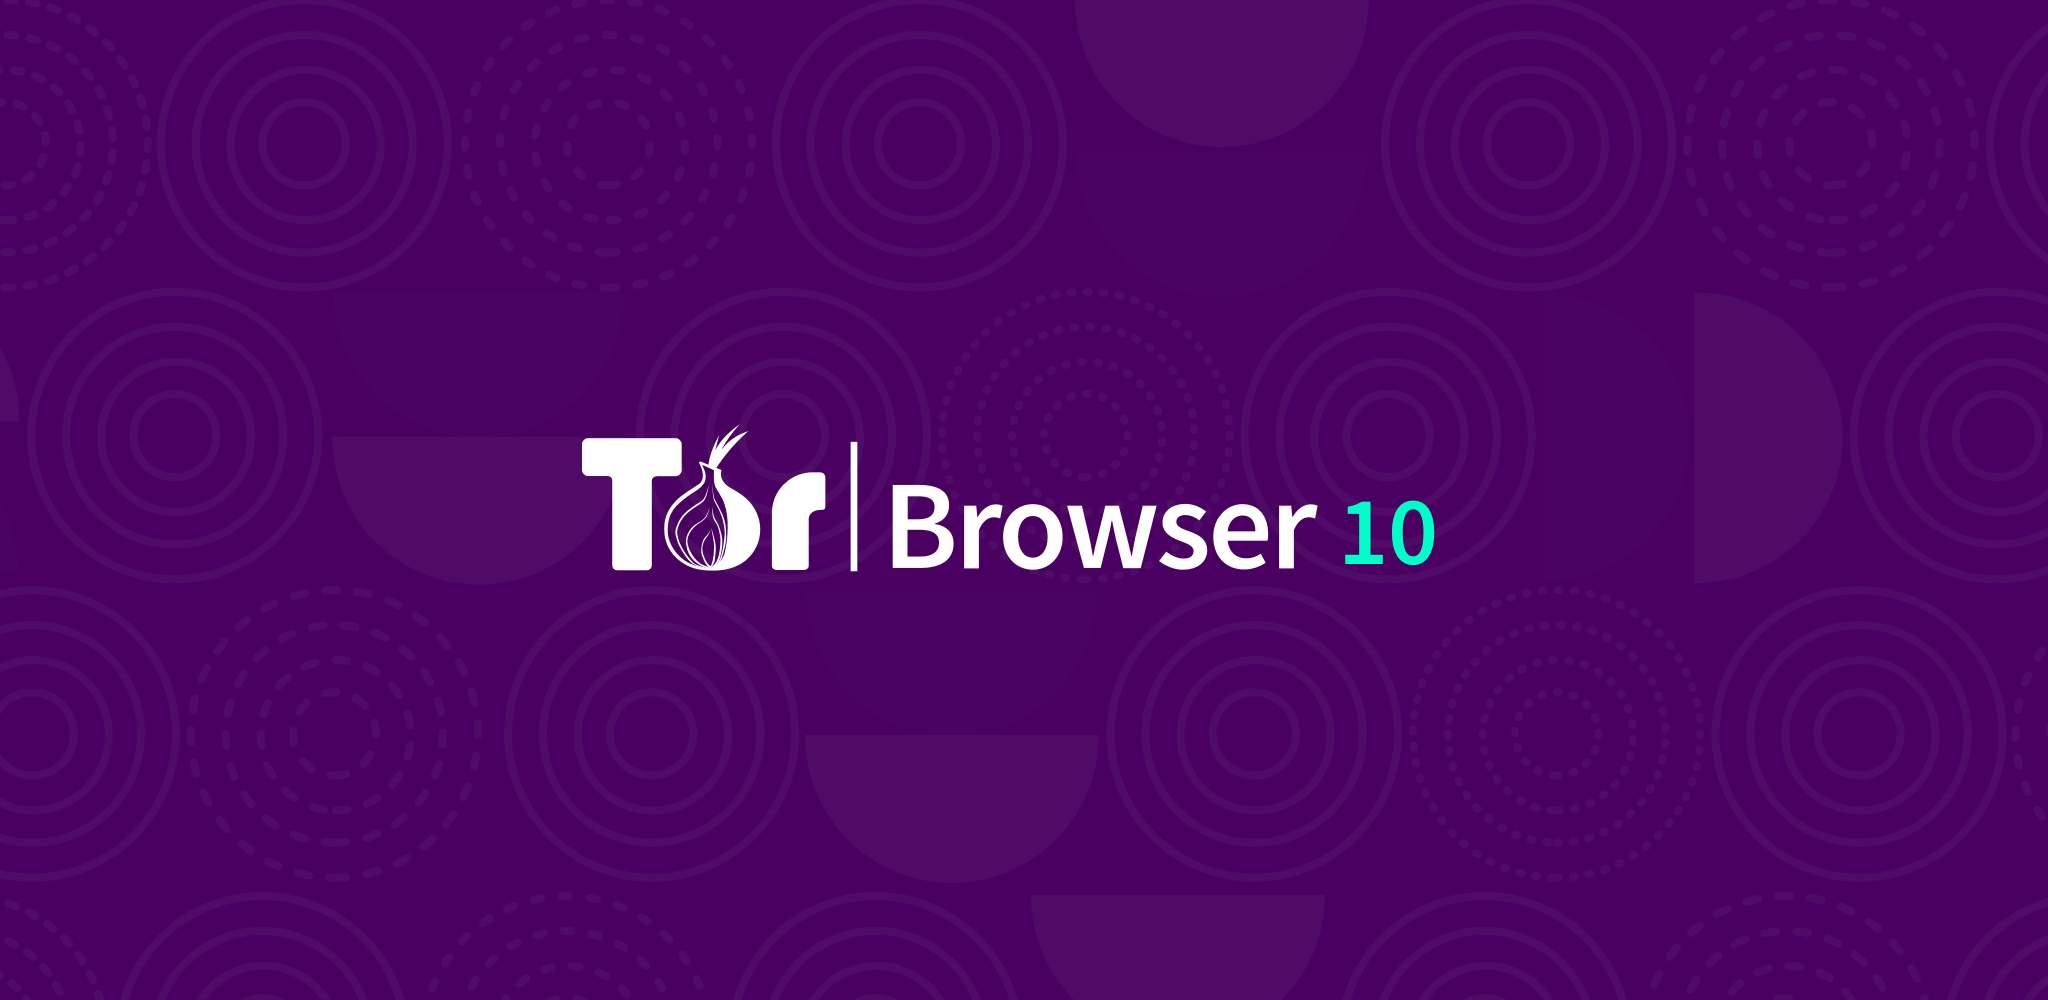 Tor browser bundle для windows mega как настроить тор браузер на определенную страну mega